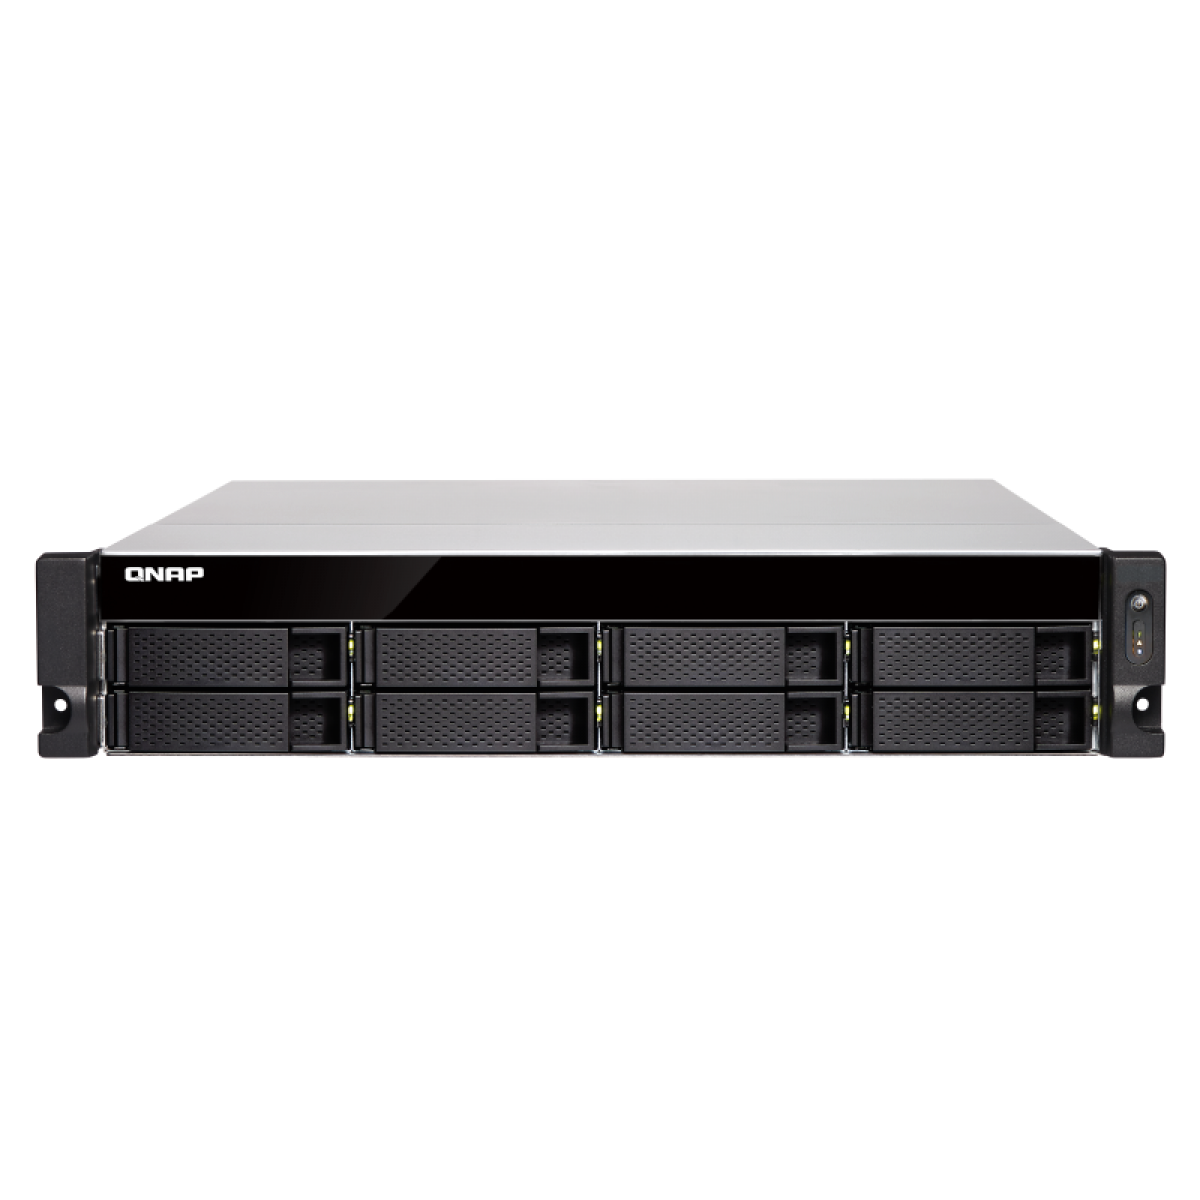 Qnap - QNAP TS-877XU-RP-3600-8G 8-Bay NAS TS-877XU-RP-3600-8G 8-Bay NAS Ryzen 5 3600 8Go DDR4 8x2.5/3.5p SATA HDD/SSD 2xGbE LAN 2x10GbE SFP+ USB3.1/3.0 300W - NAS